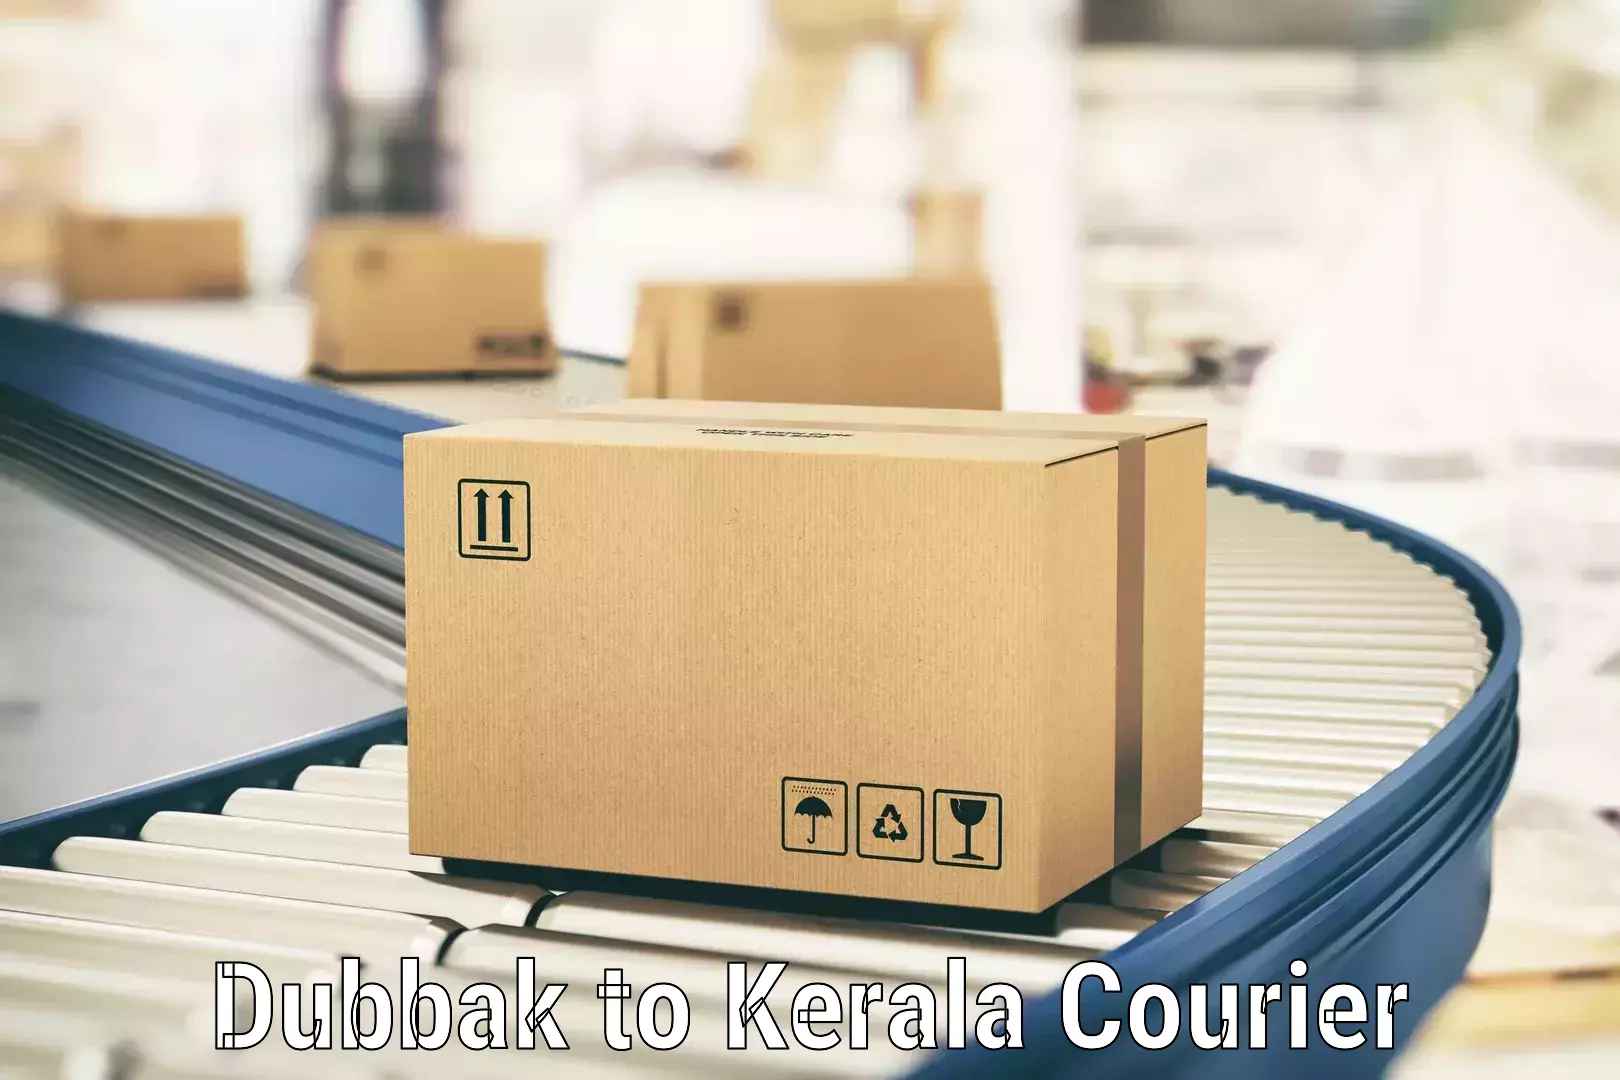 Efficient parcel tracking Dubbak to Mundakayam